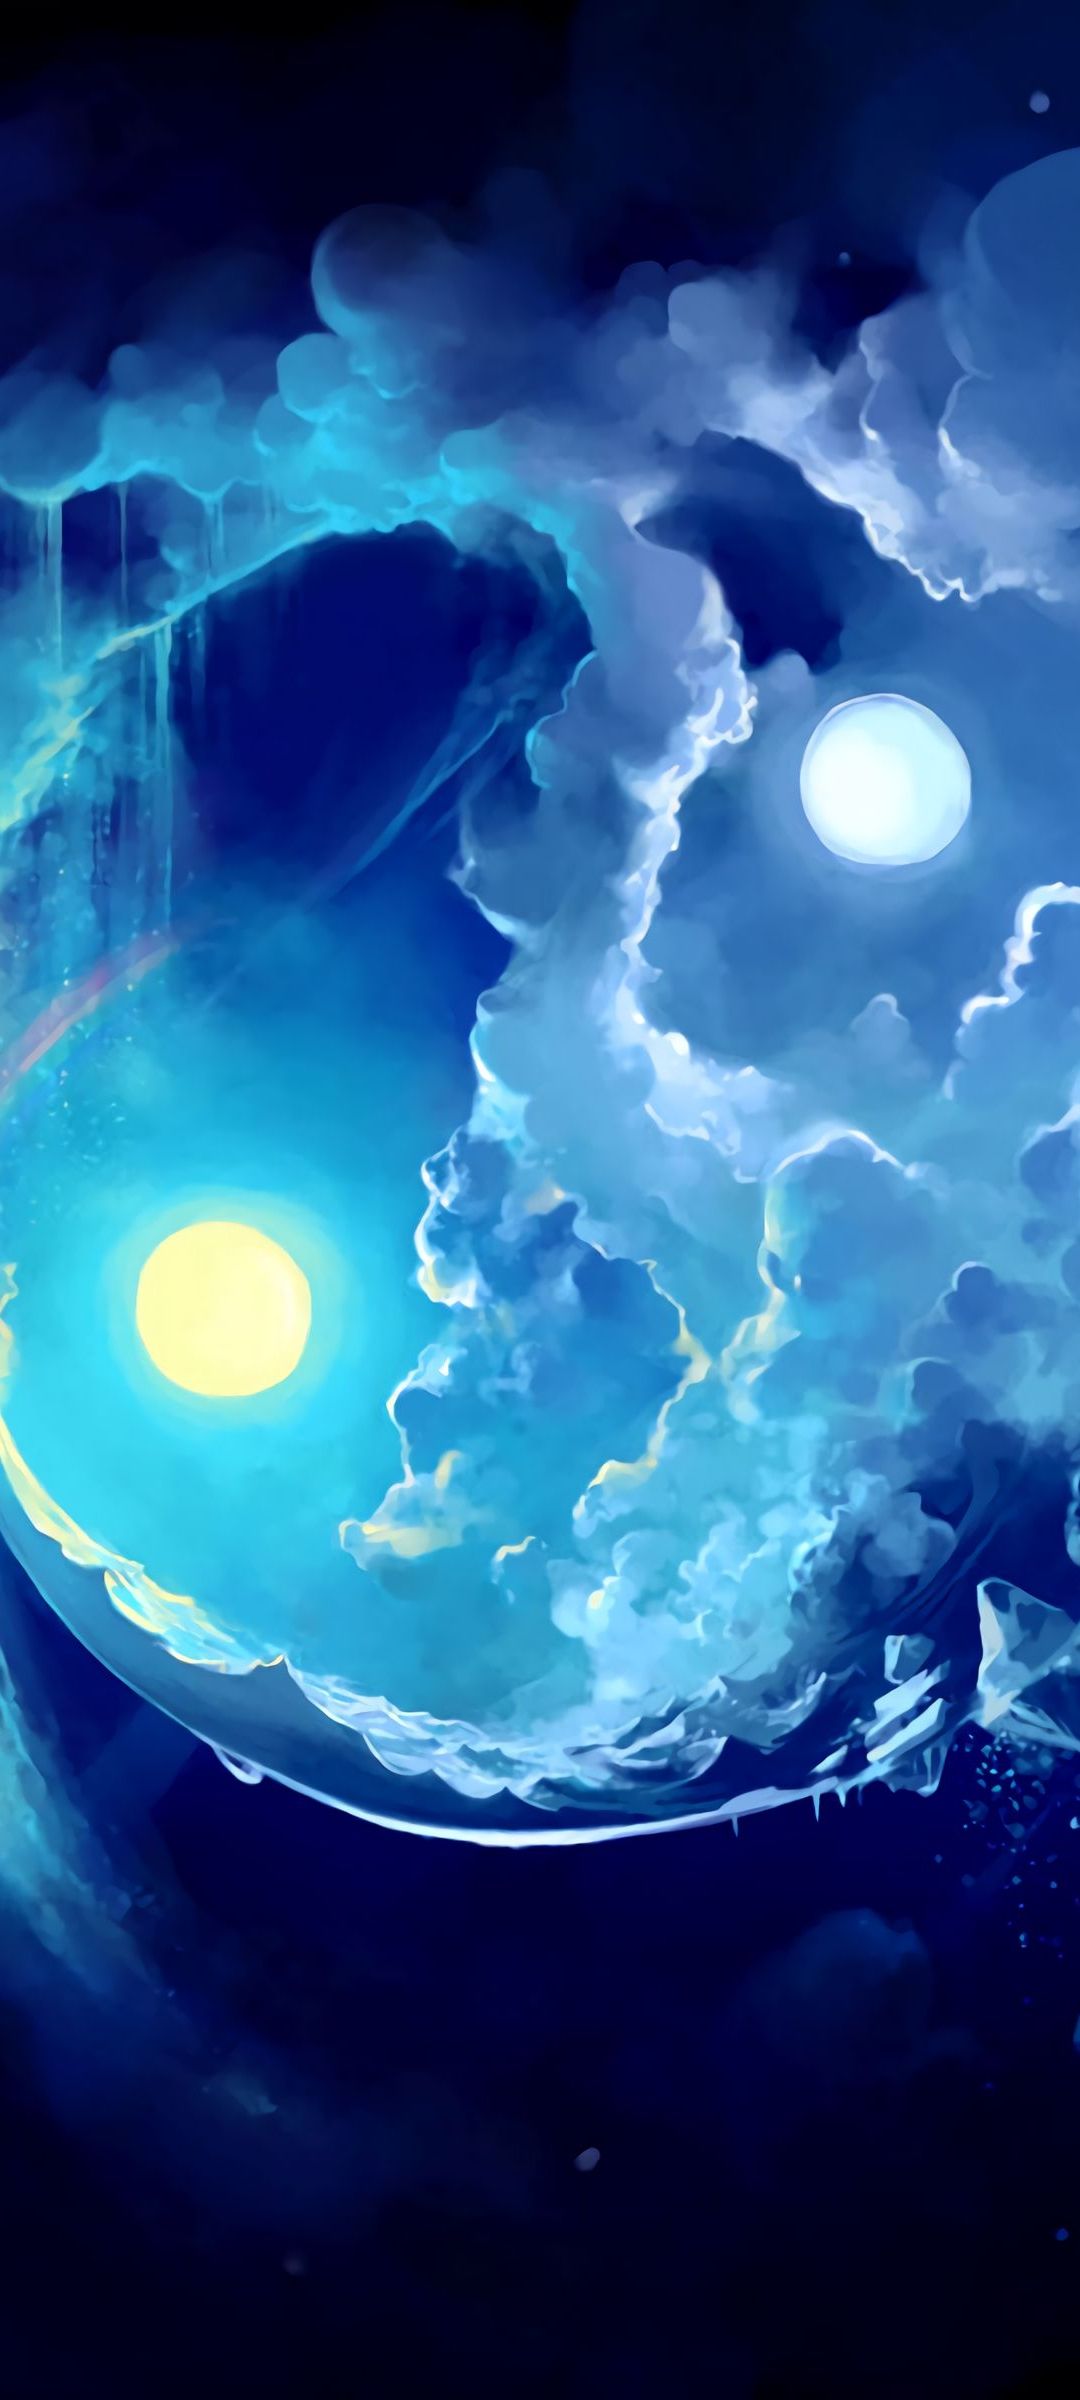 黄色の月と青い空と煙のような雲 Oppo Reno3 A Androidスマホ壁紙 待ち受け スマラン